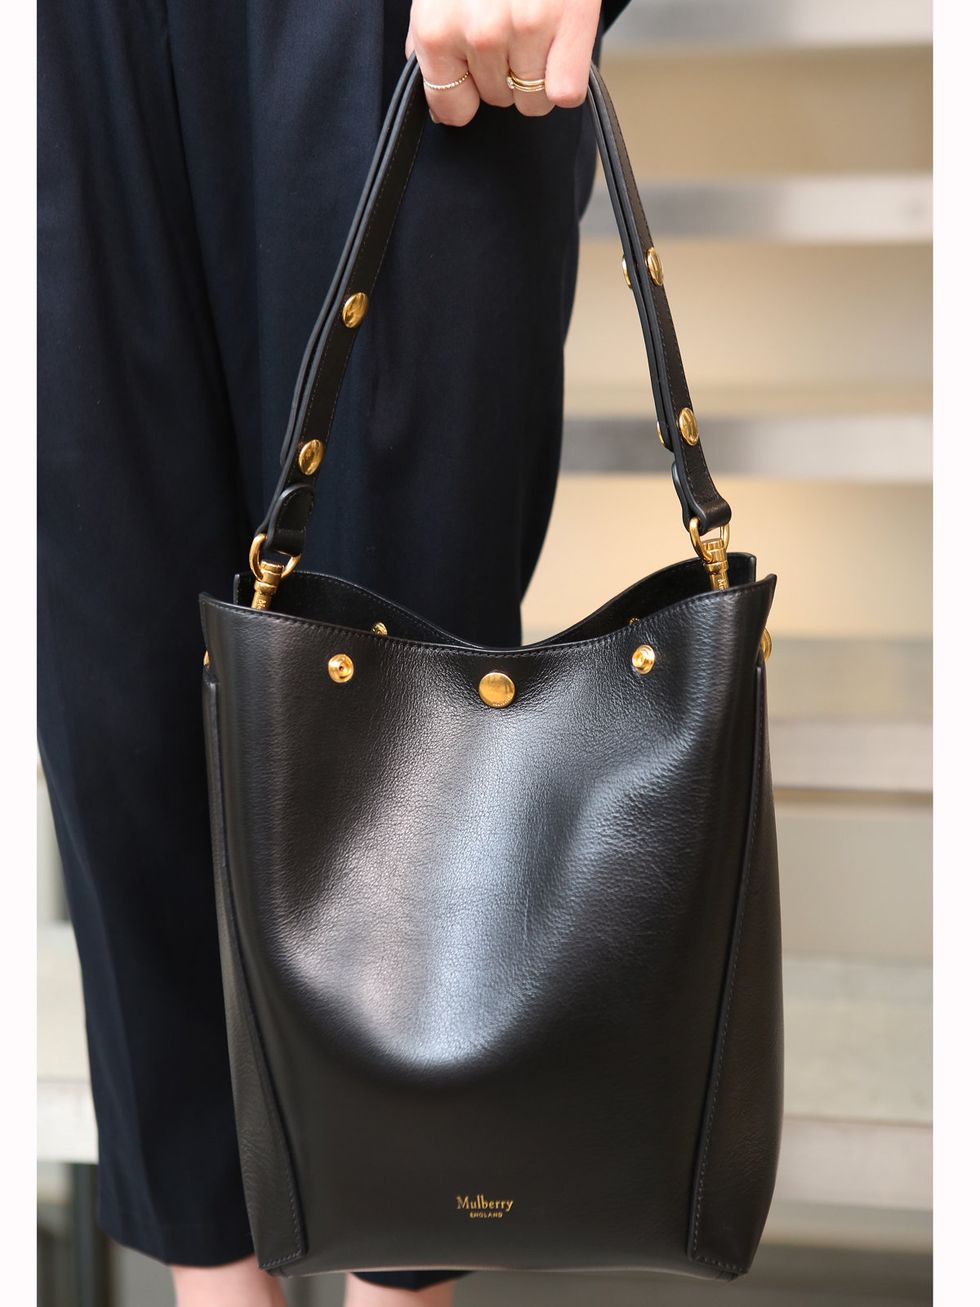 Handbag, Bag, Product, Black, Leather, Fashion accessory, Shoulder bag, Shoulder, Tote bag, Brown, 